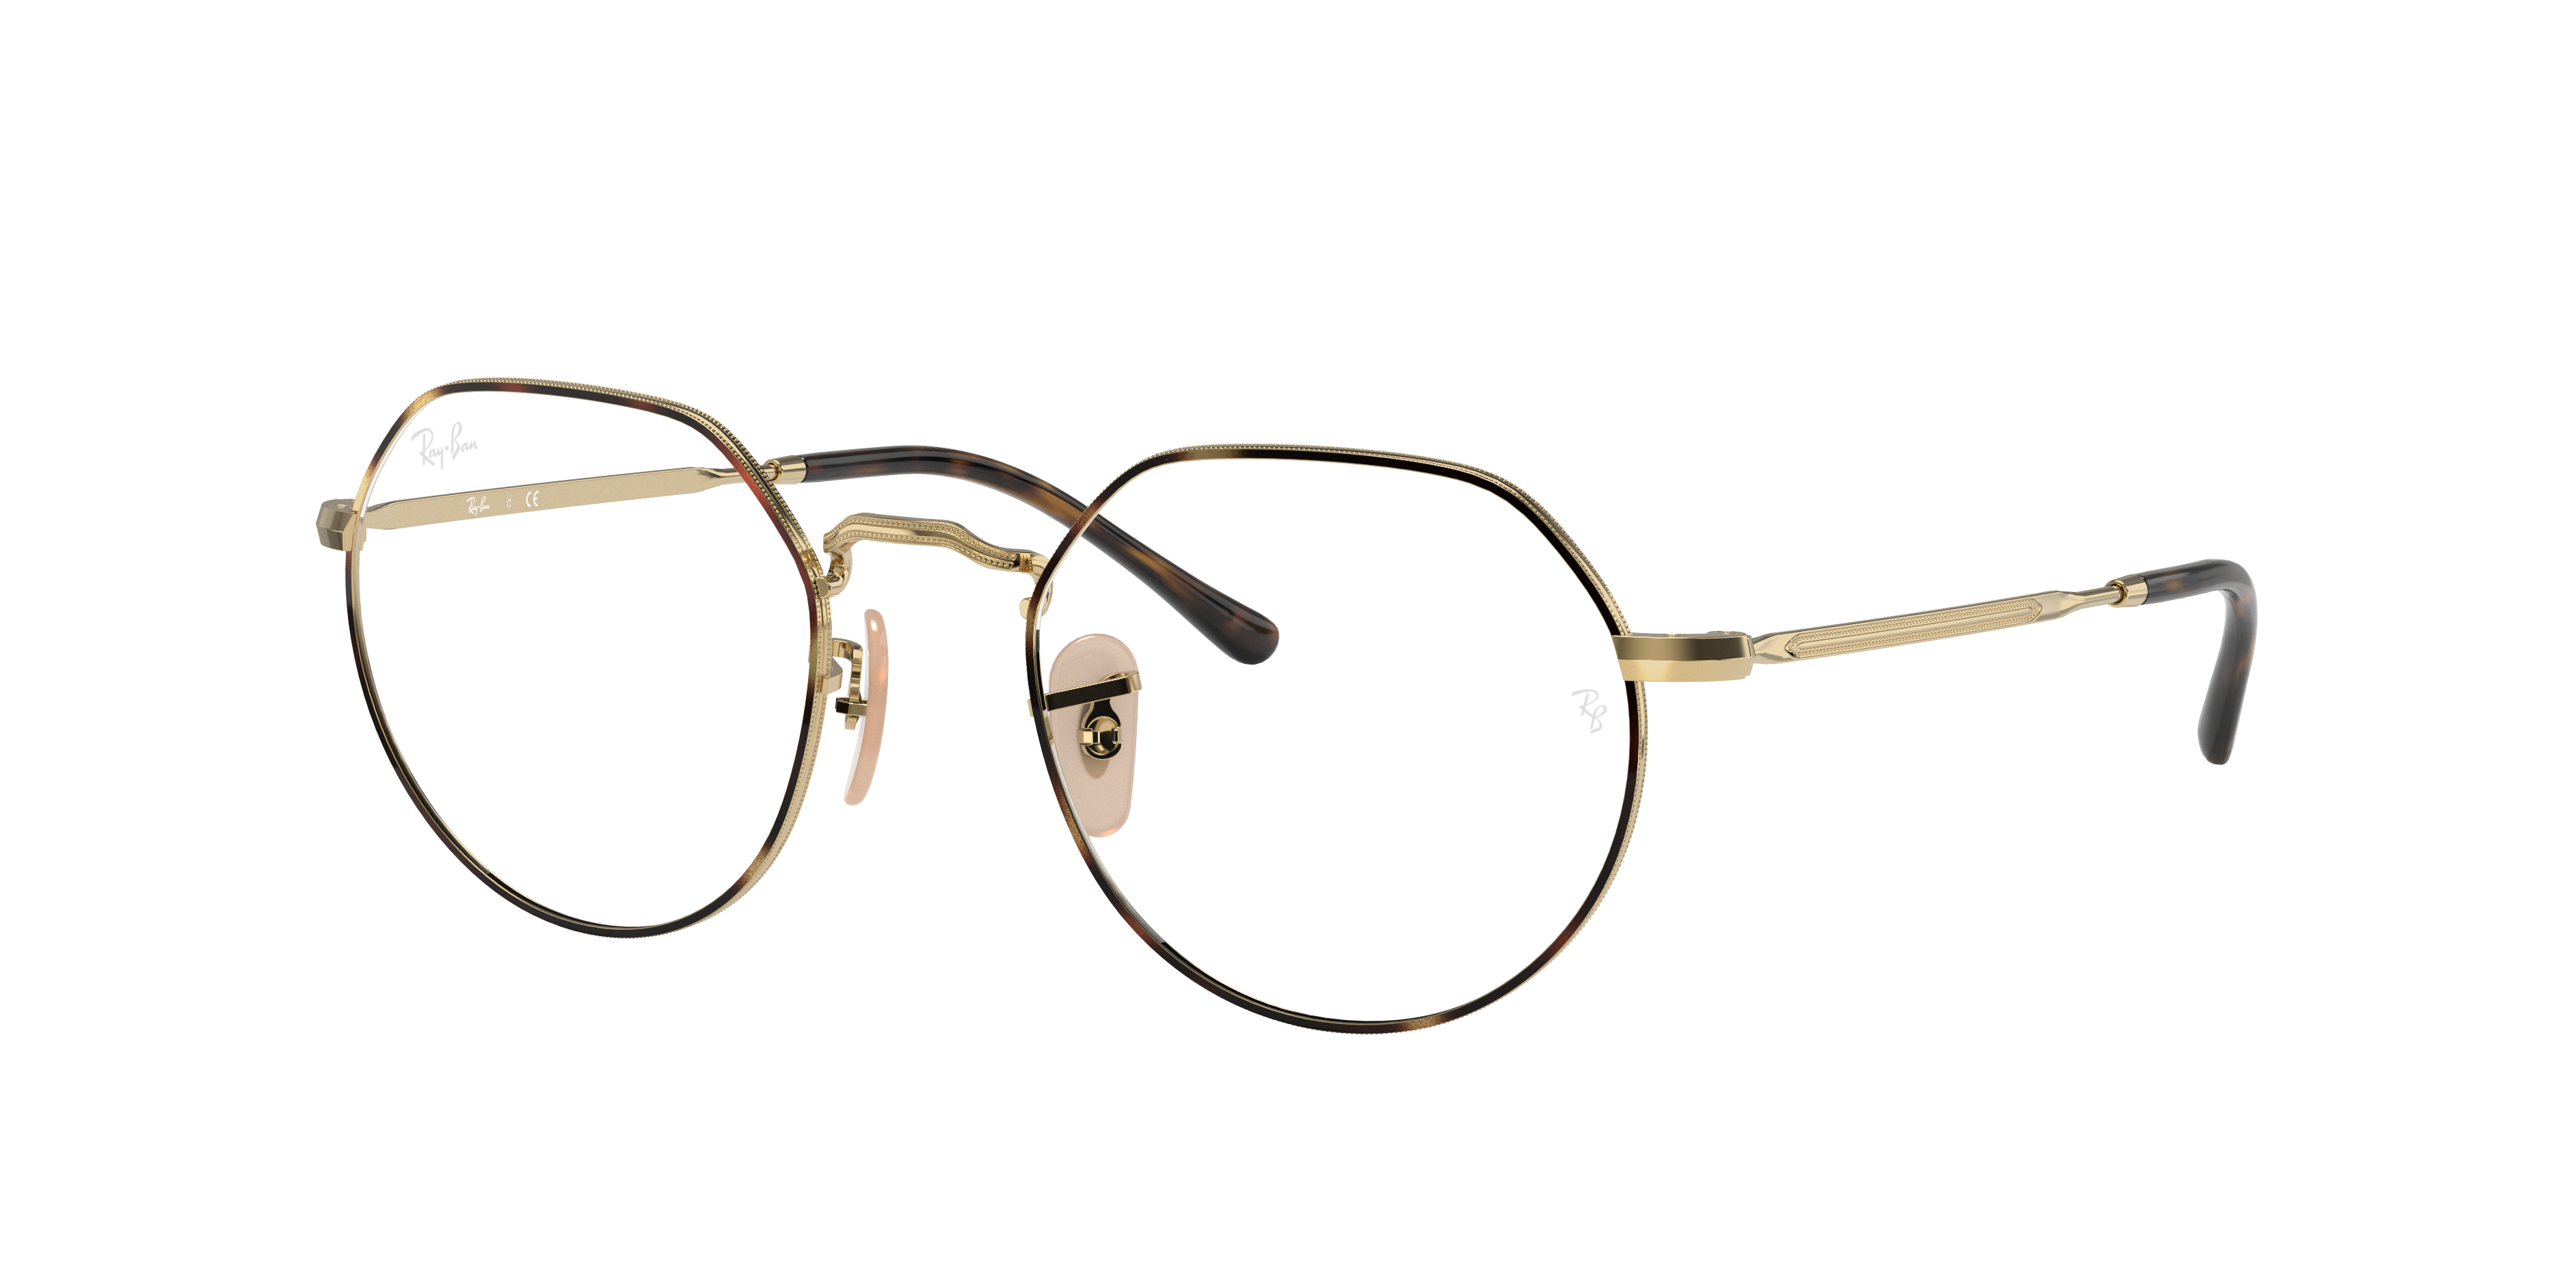 Jack Optics Eyeglasses with Tortoise Frame | Ray-Ban®